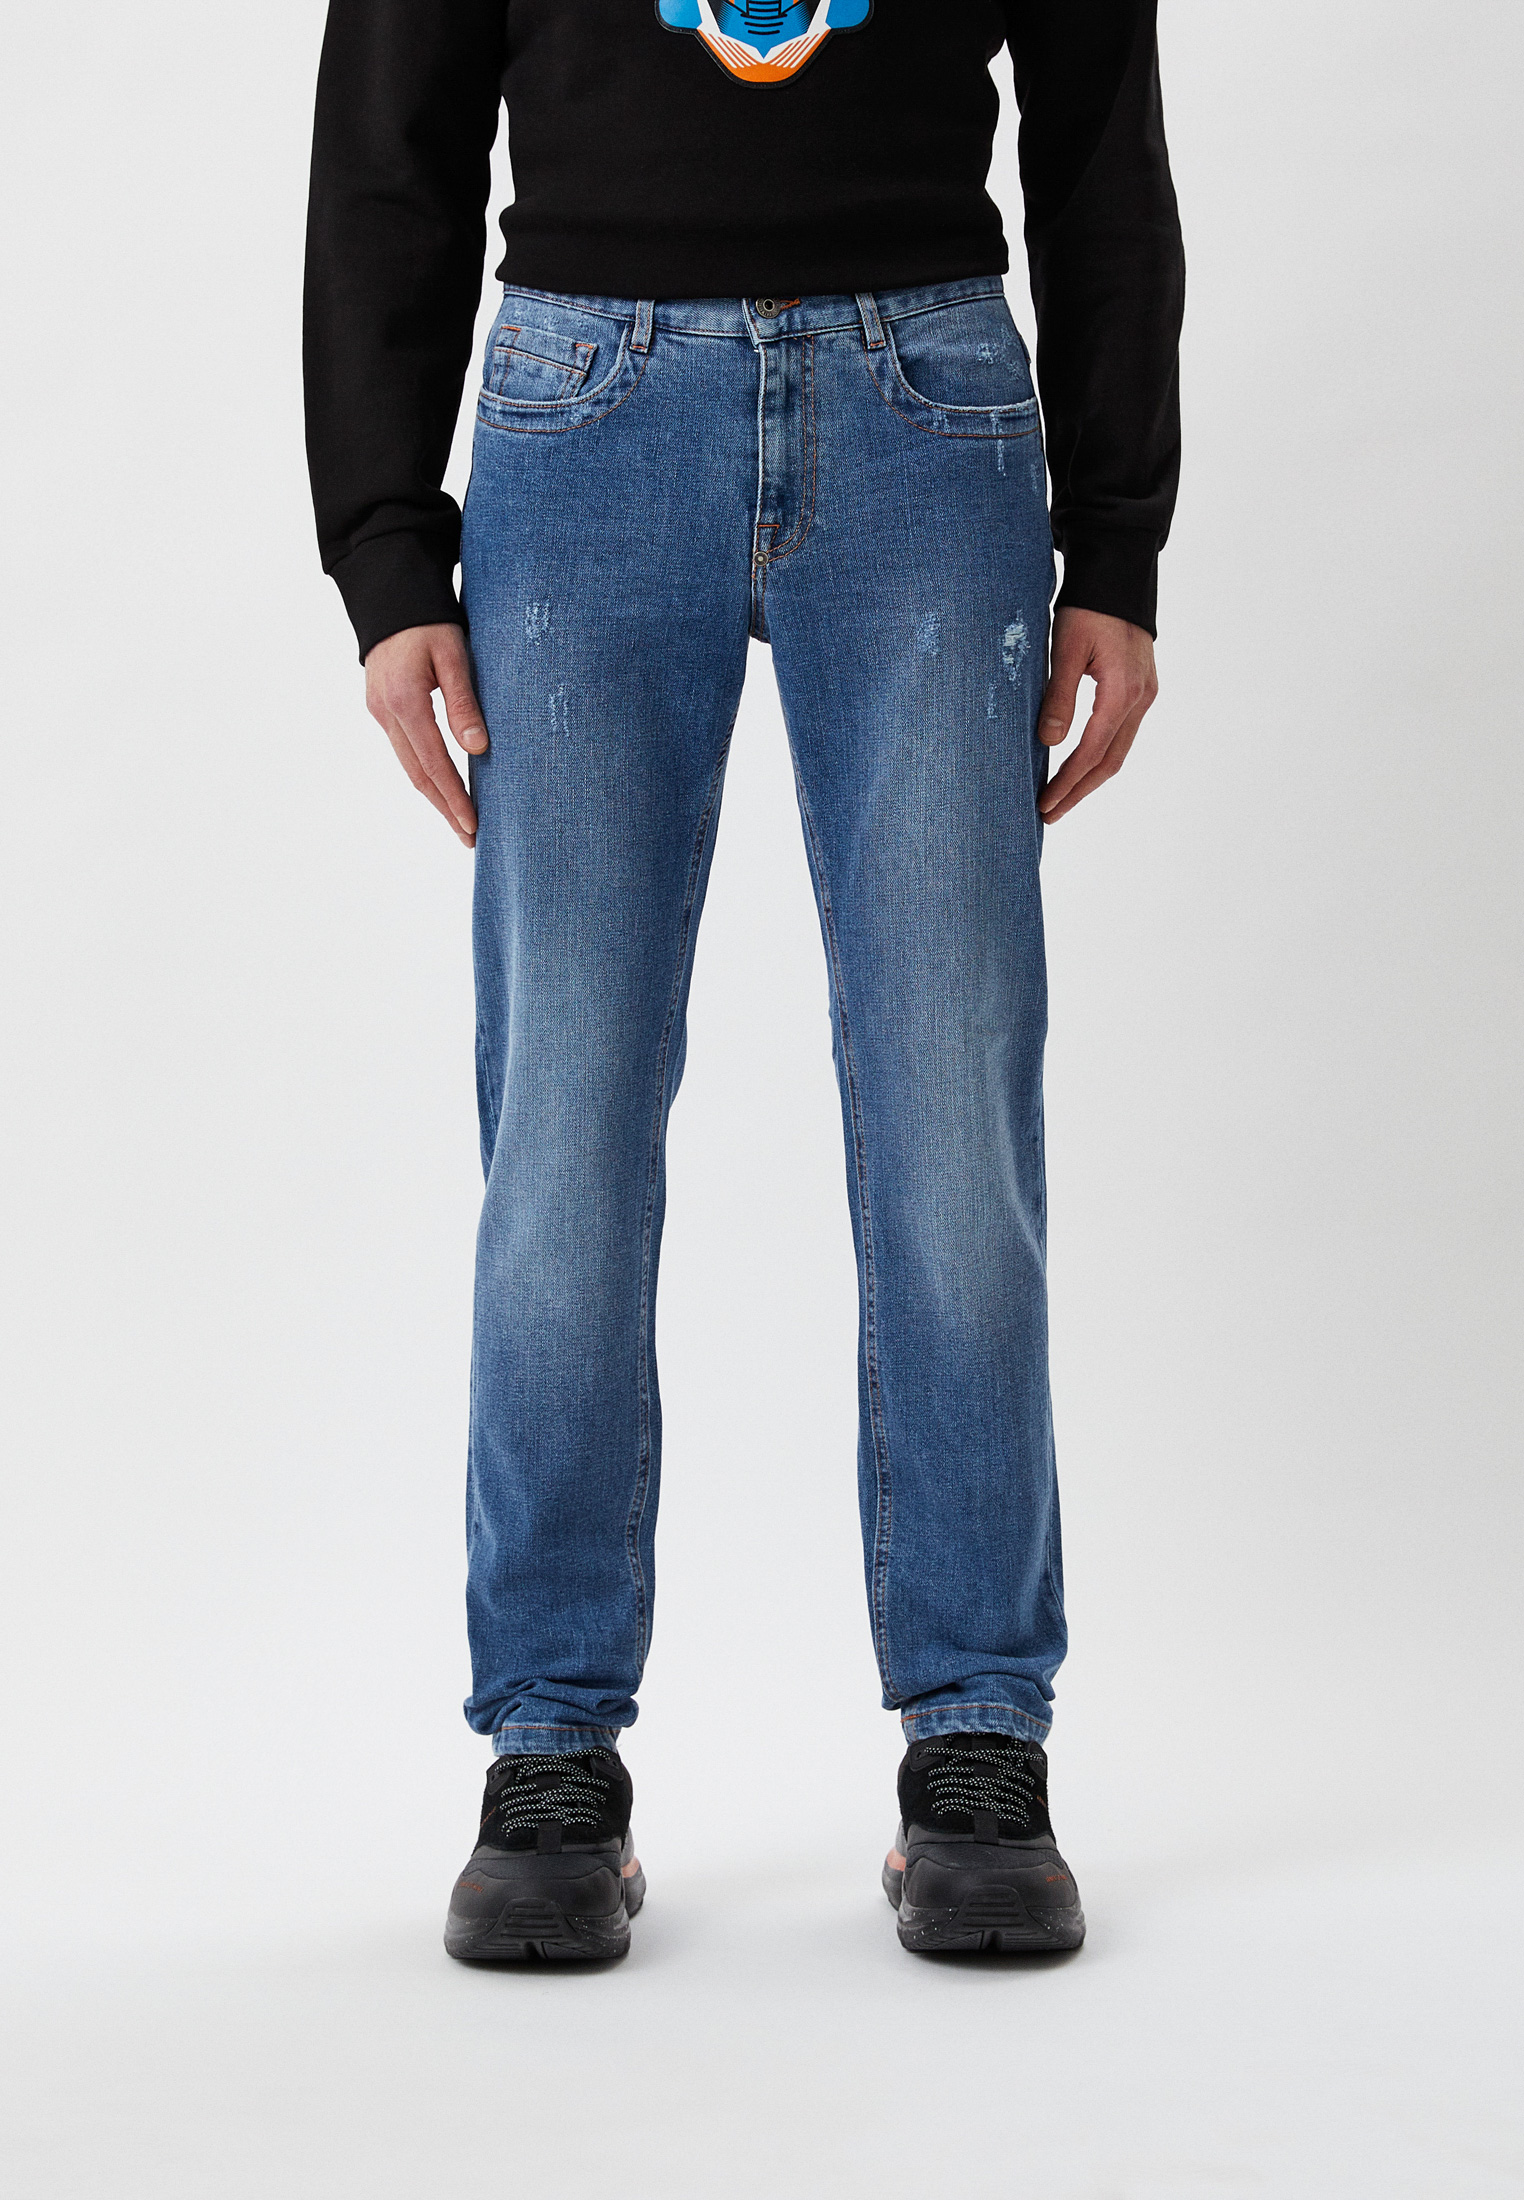 Мужские зауженные джинсы Bikkembergs (Биккембергс) C Q 101 03 S 3393: изображение 11